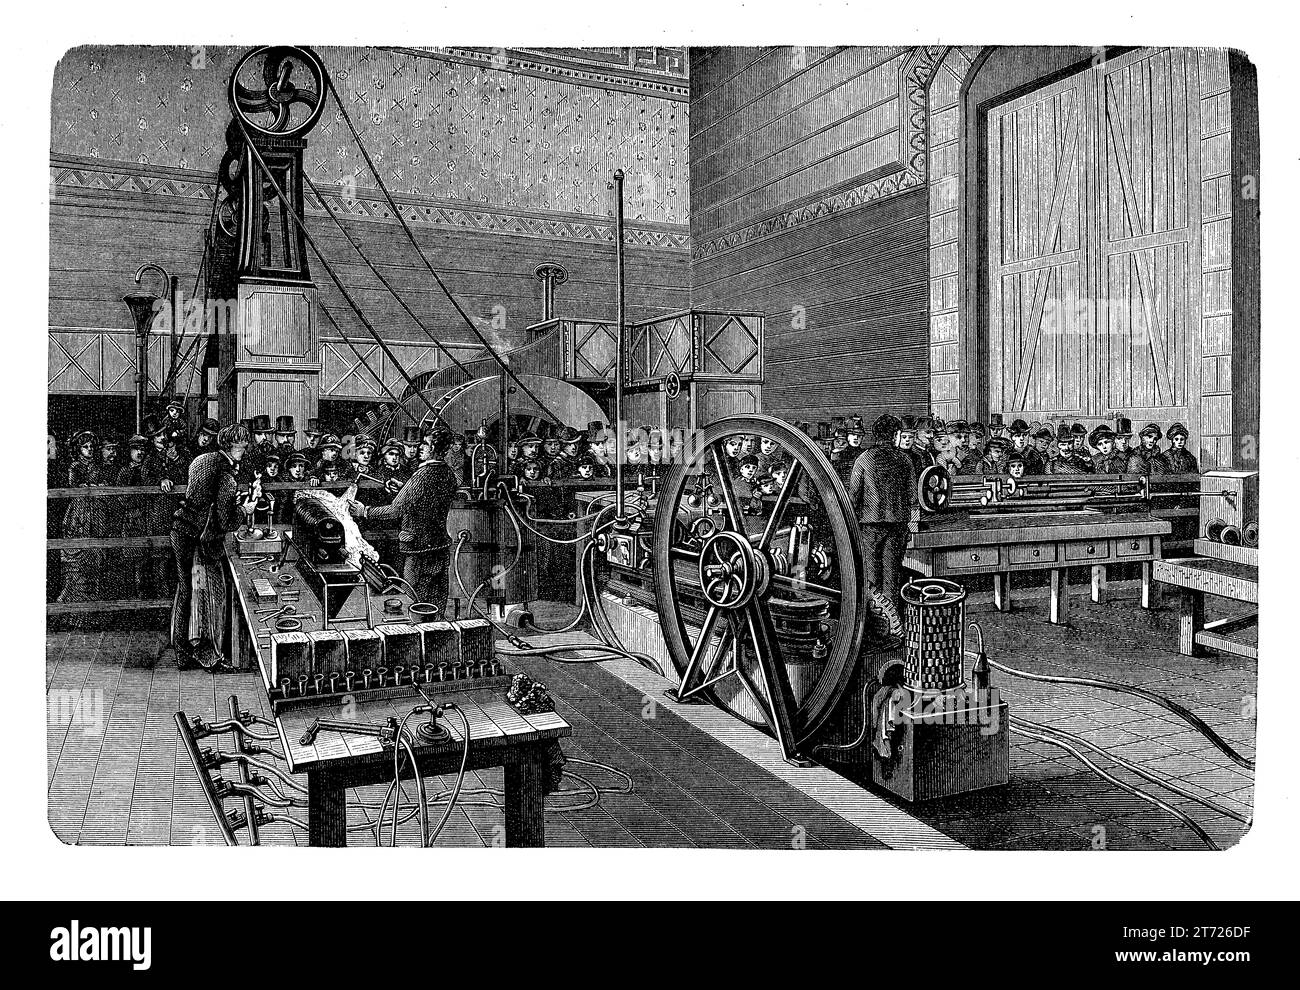 Maschinenraum im Musee des Arts et Metiers Paris, 1794 gegründet, das älteste Wissenschaftsmuseum Europas mit einer großen Sammlung wissenschaftlicher Instrumente, Maschinen und Werkzeuge Stockfoto